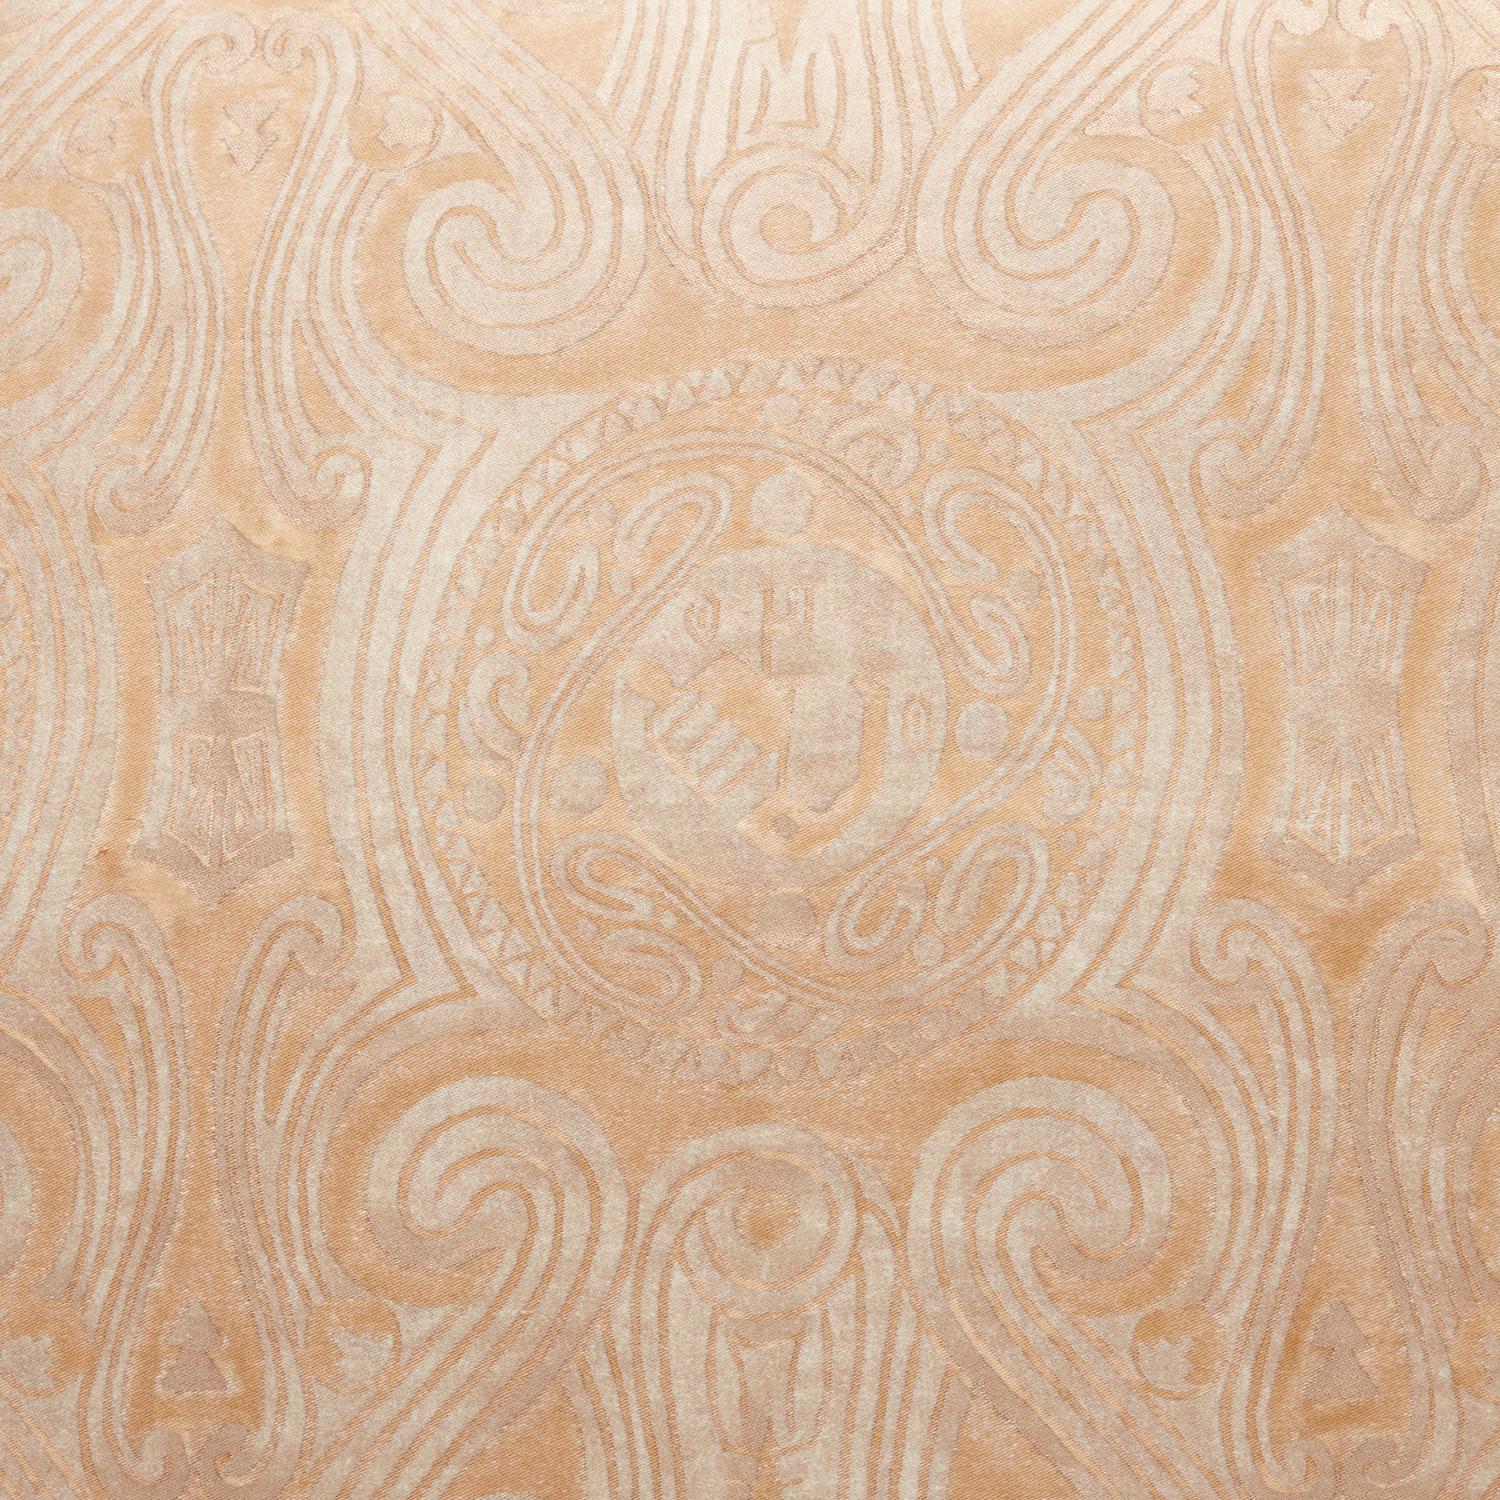 Ein Paar Fortuny-Stoffkissen im Peruviano-Muster, hellbraun und silbrig-goldfarben, mit Seidenschrägband und goldfarbener Seidenunterlage. Das Muster ist ein peruanisch inspiriertes Design mit Schneckenmotiv. 

Neu gefertigt mit altem